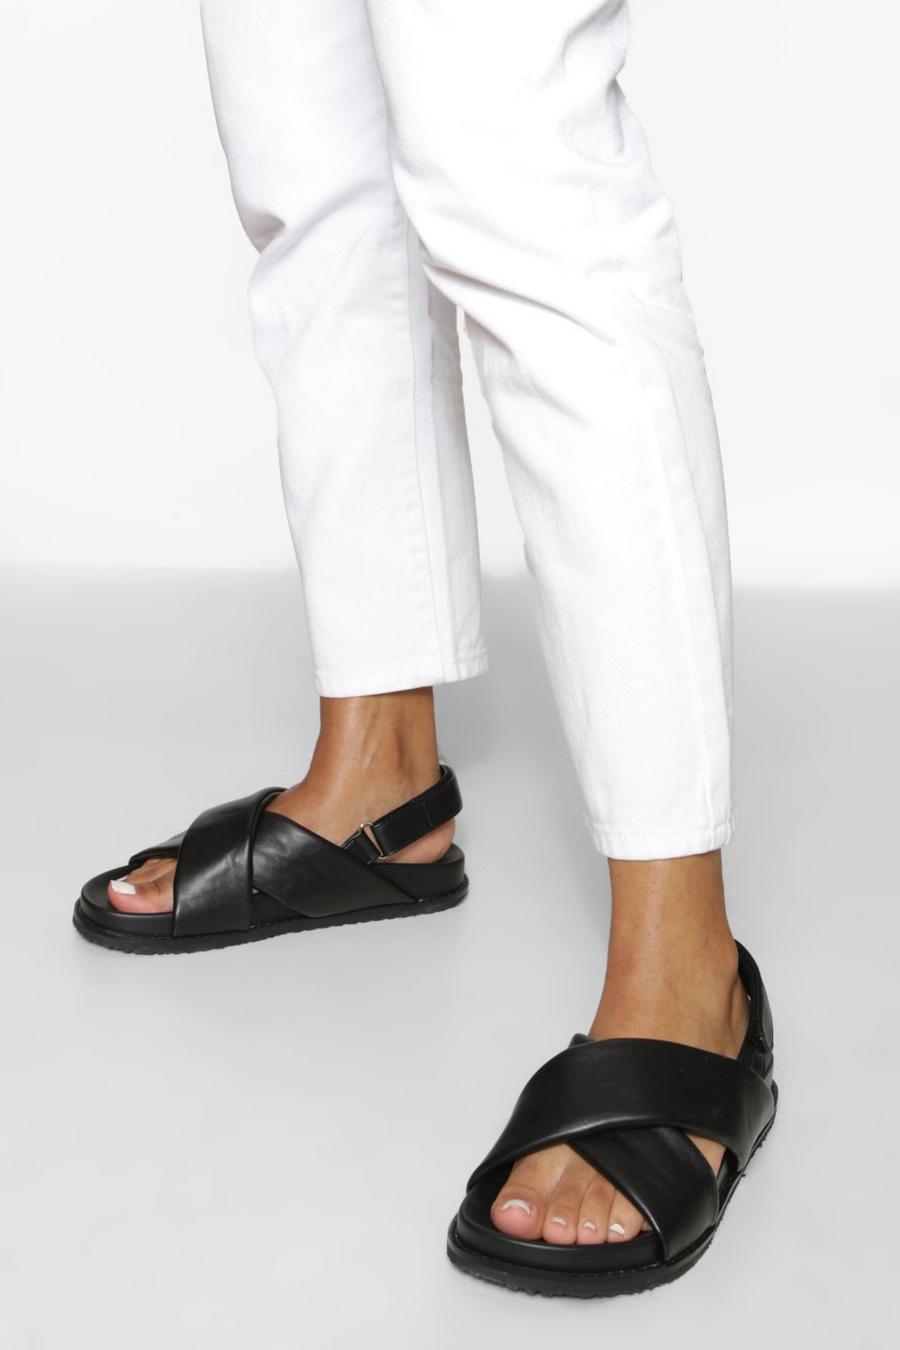 Sandali sportivi stile maschile imbottiti a calzata ampia con fascette incrociate, Nero negro image number 1